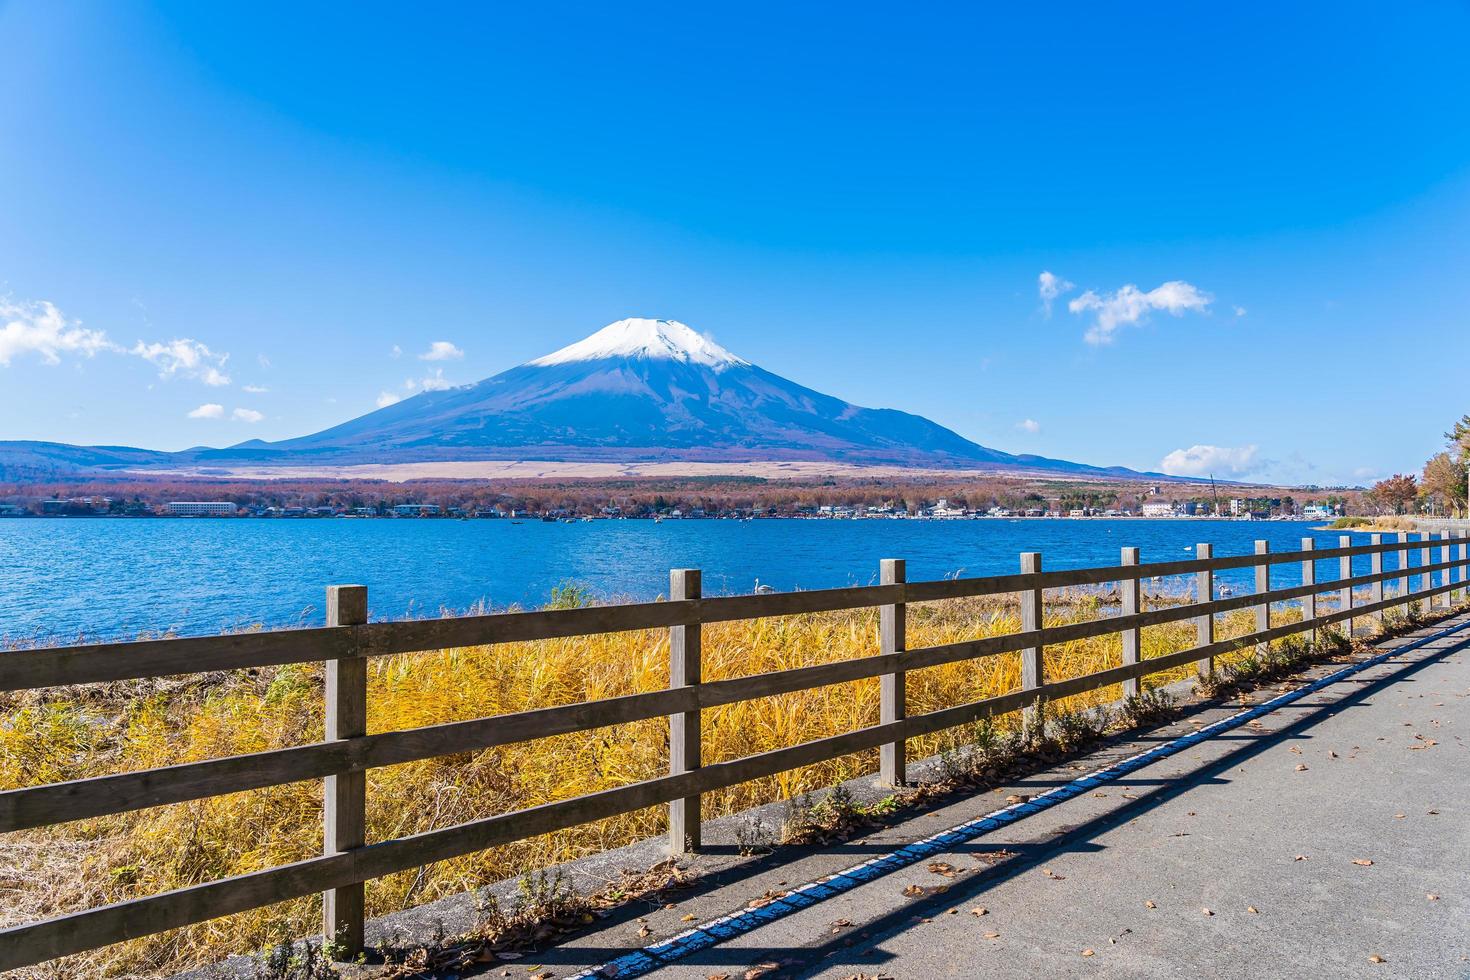 Mt. Fuji and Lake Yamanakako in Japan photo